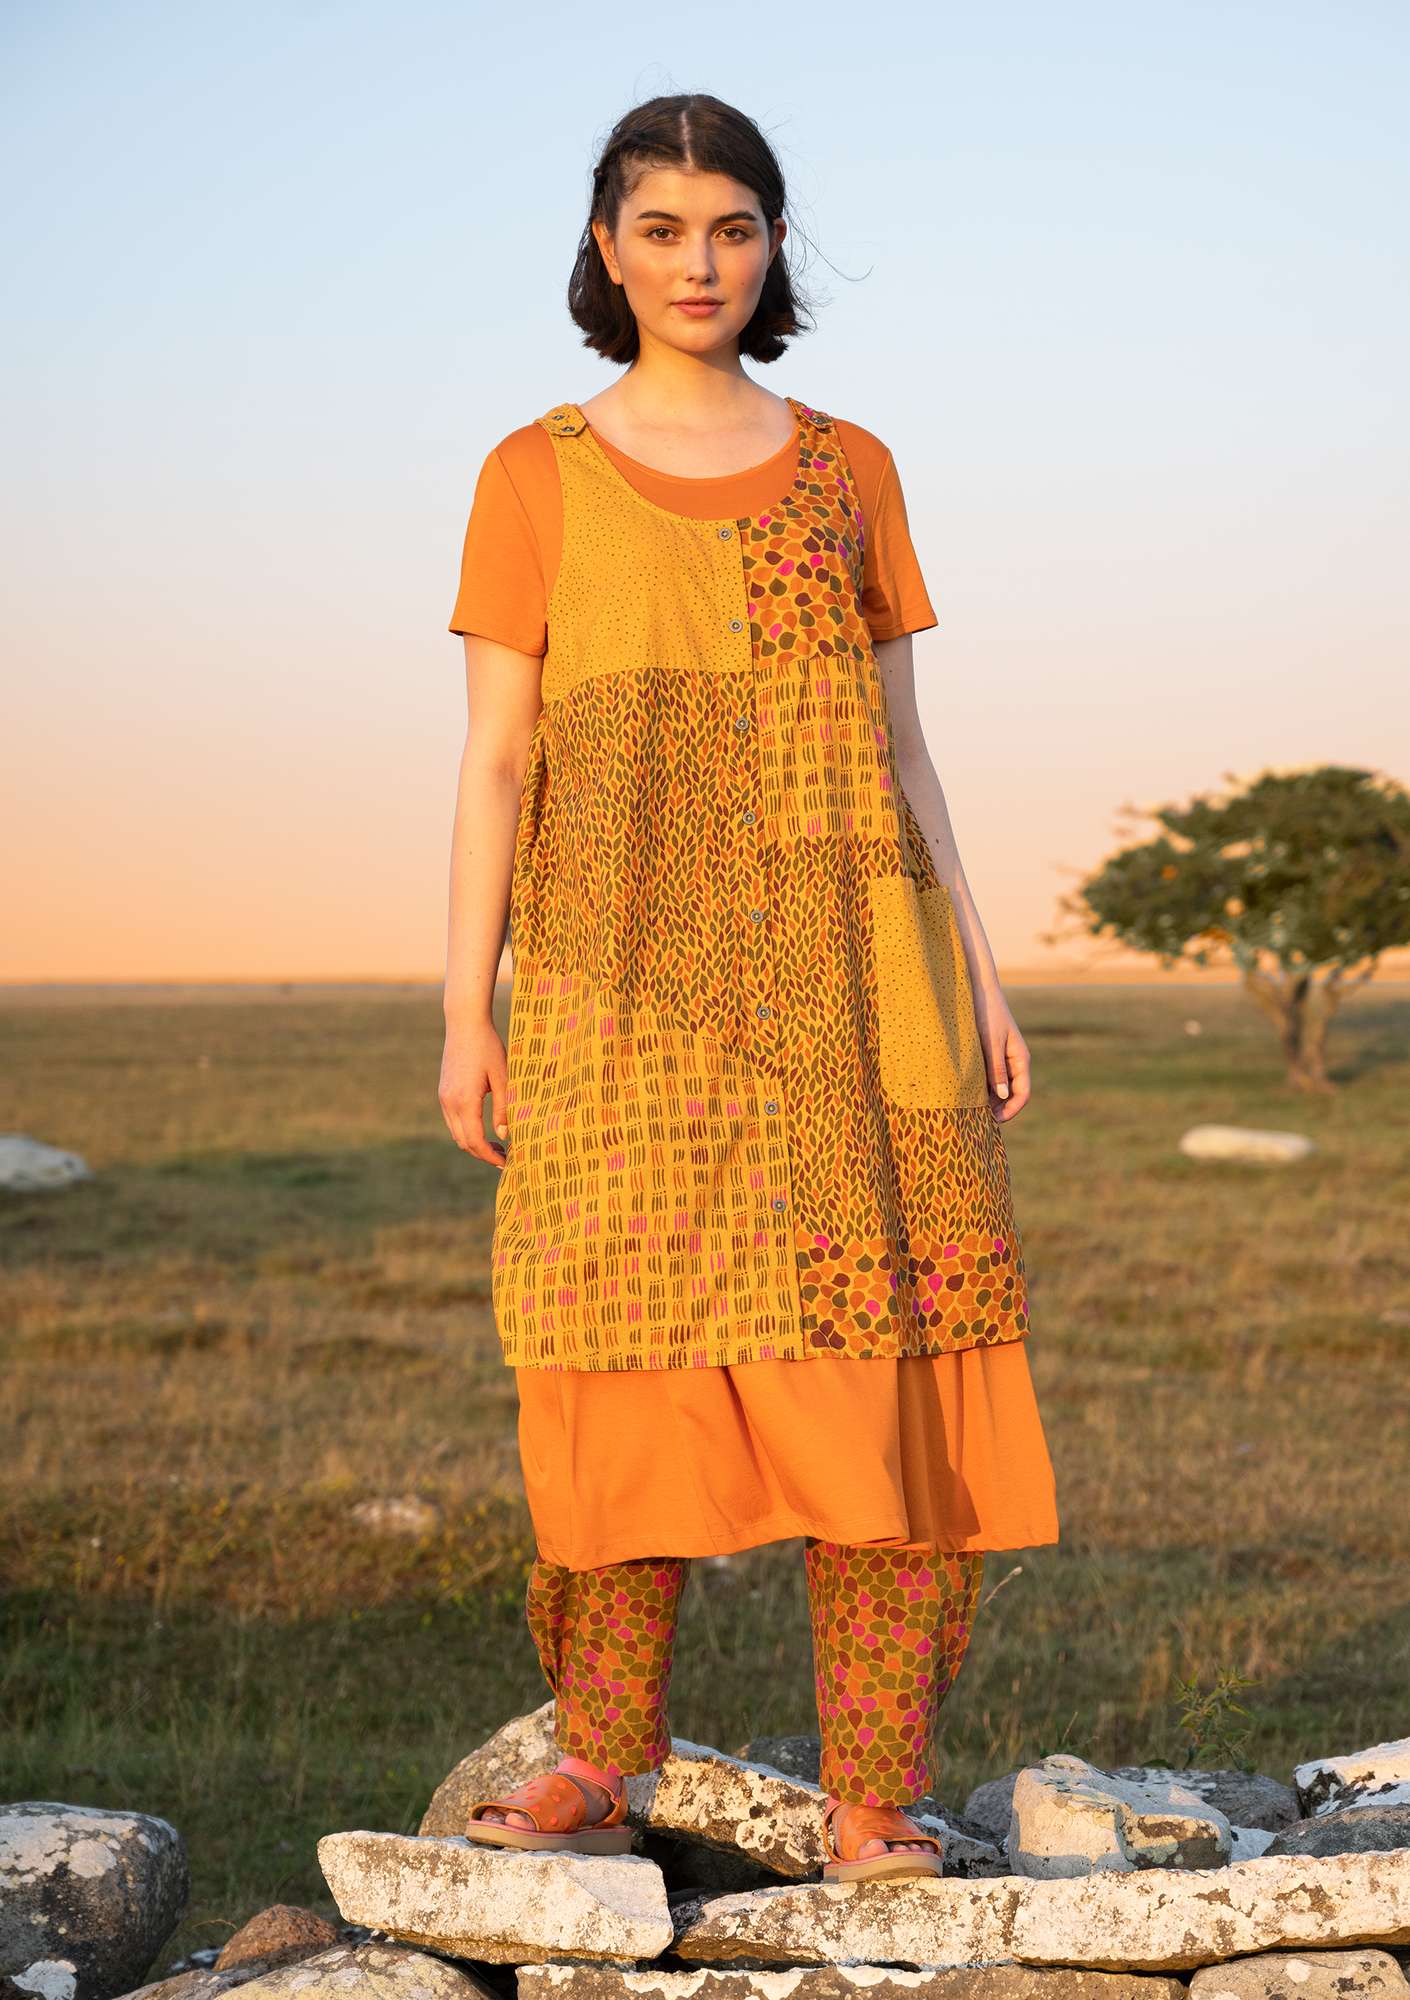 Vevd kjole «Earth» i økologisk bomull / lin lys ockra